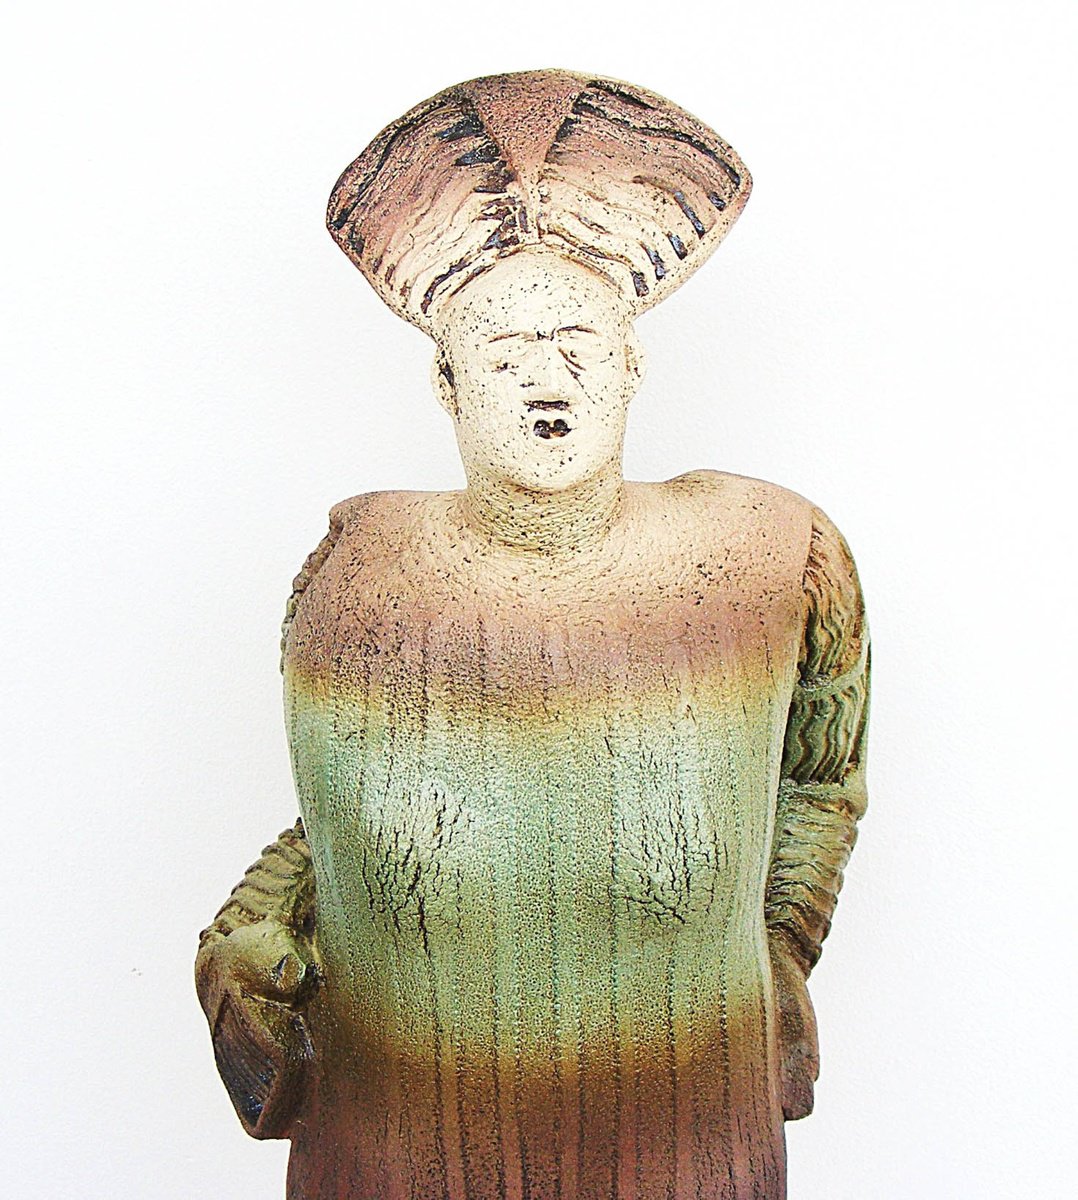 Ceramic Sculpture - Calypso, a beautiful nymph in Homer